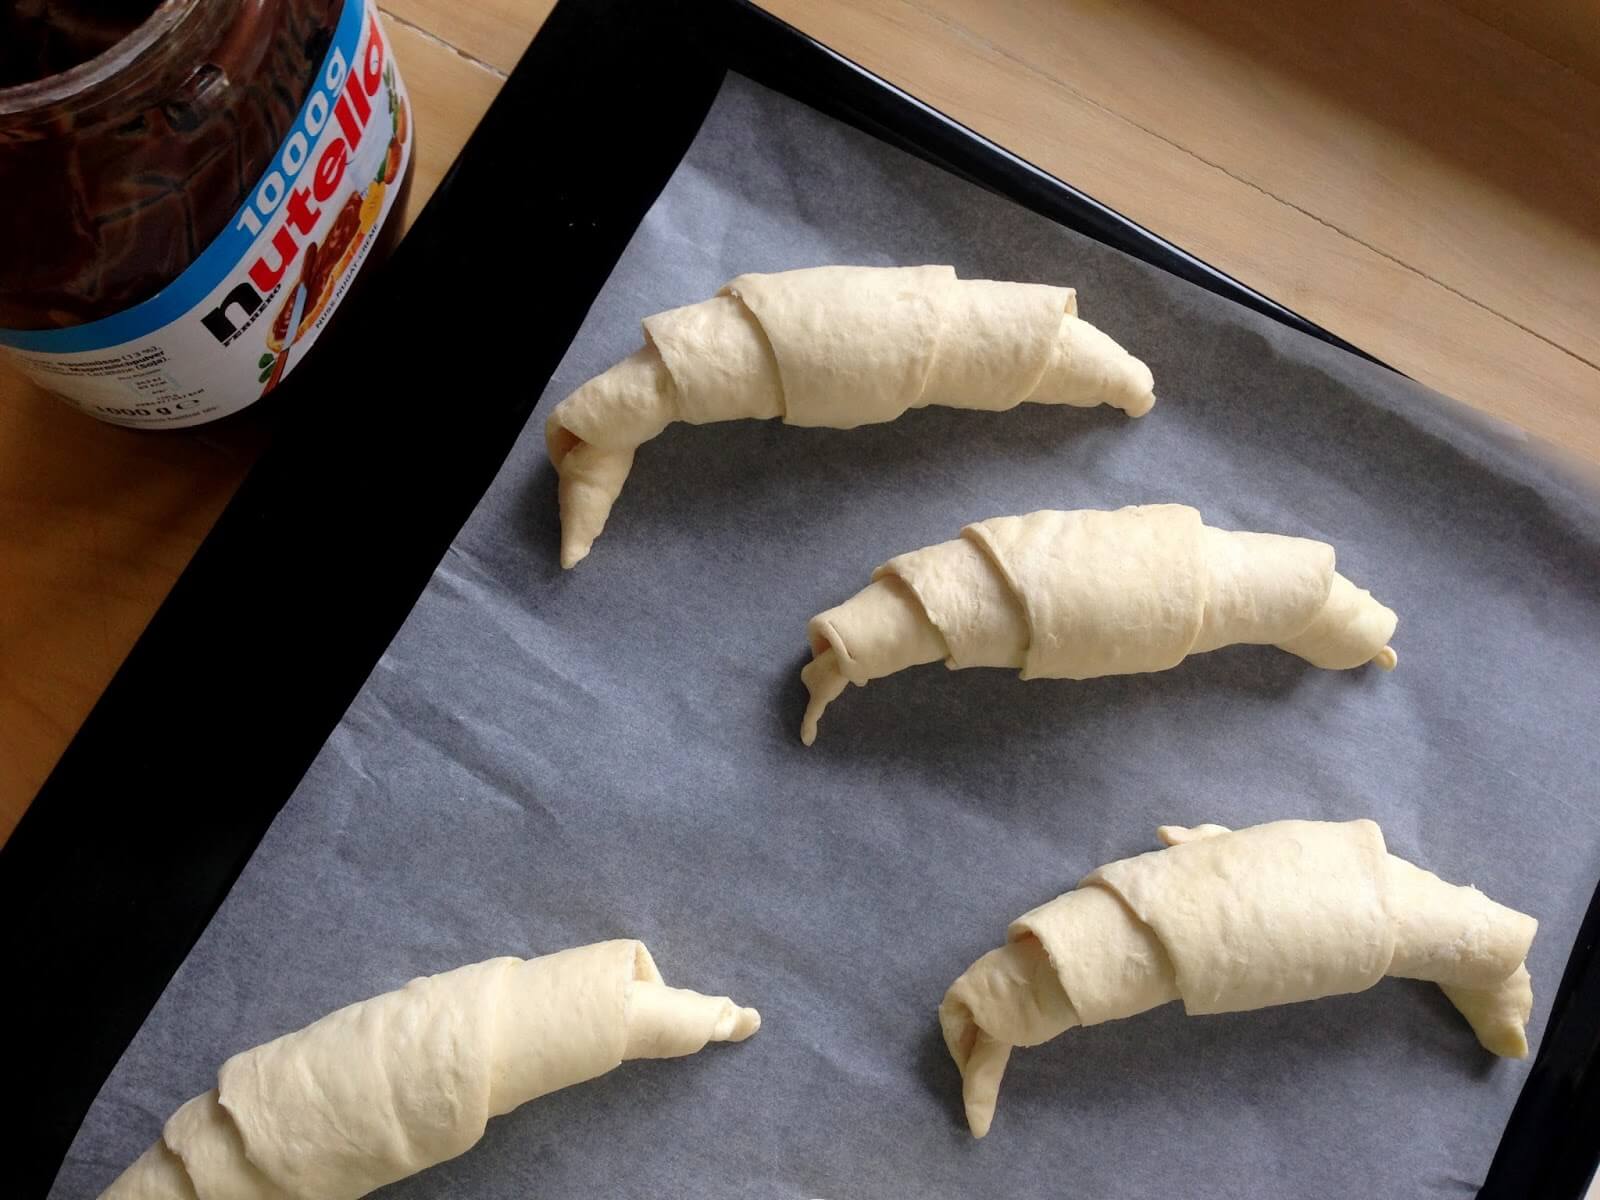 A croissantokat rakjuk rá egy sütőpapírra. Még nőni fognak, ezért rakjuk őket egy kicsit távolabb egymástól. 